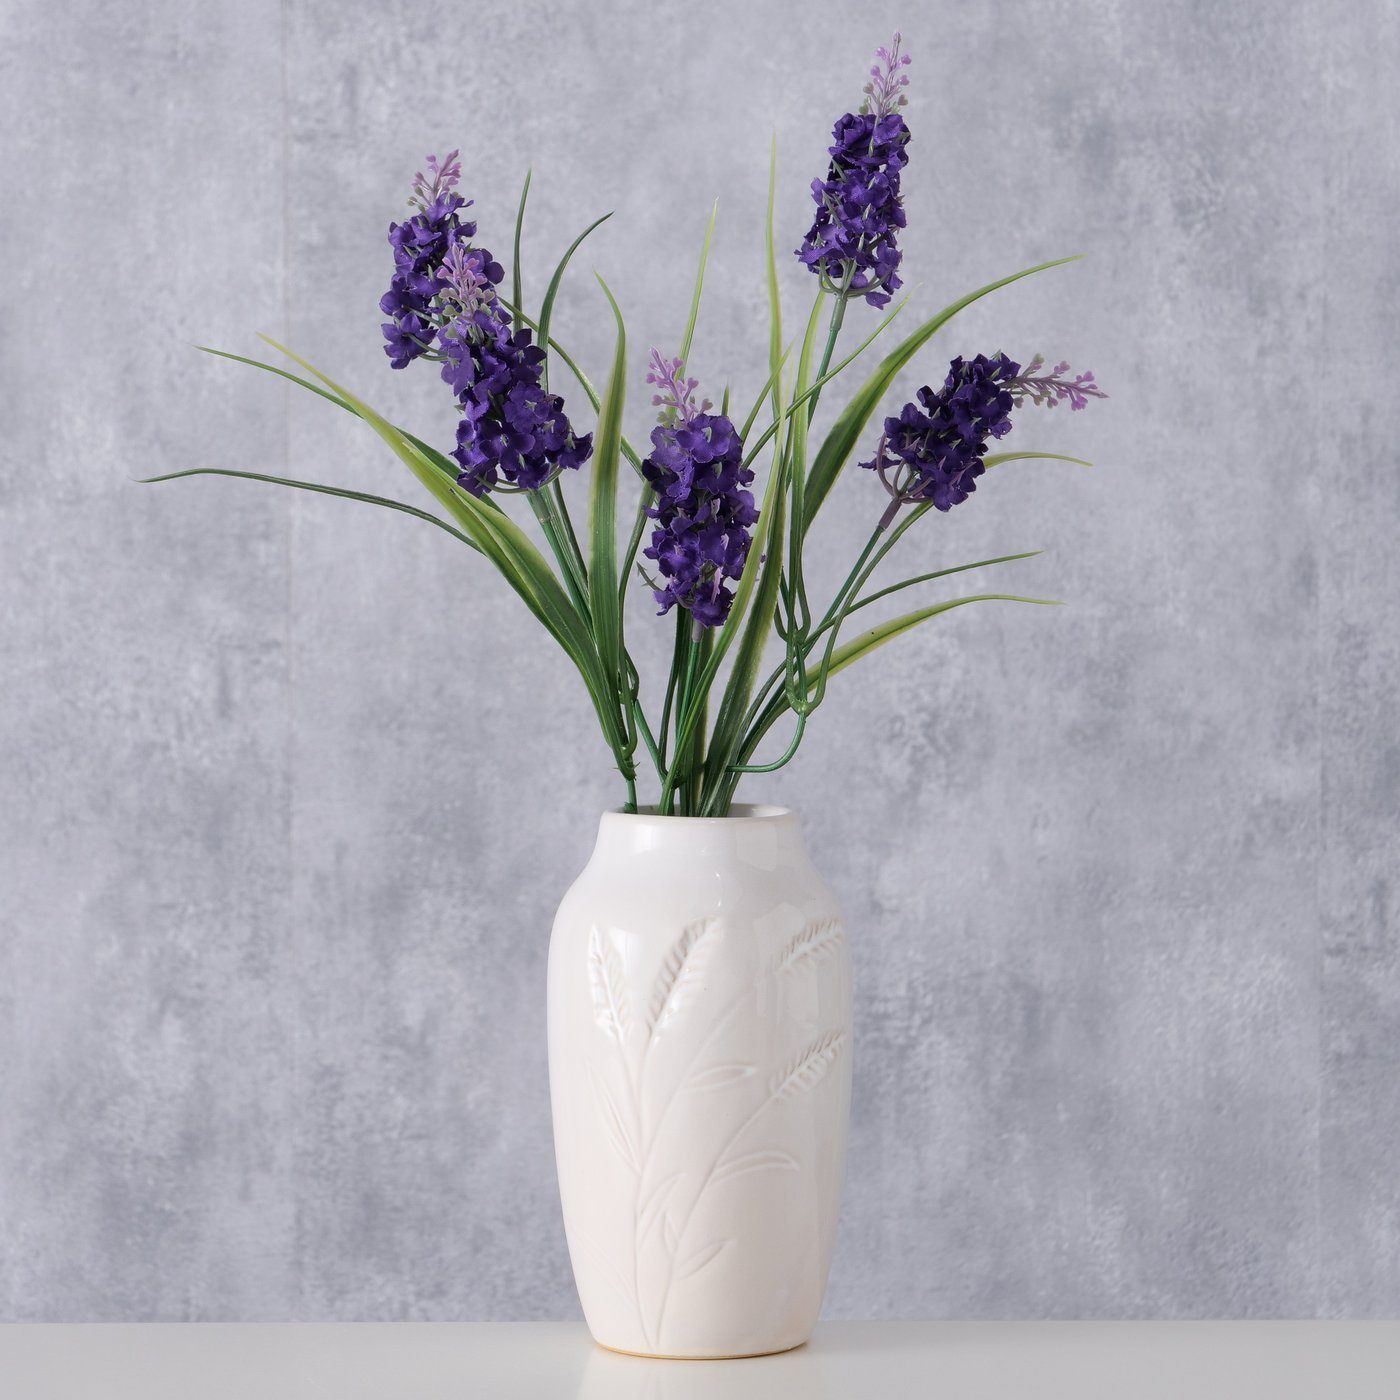 BOLTZE Dekovase "Jenna" aus Porzellan in weiß, Vase Blumenvase | Dekovasen